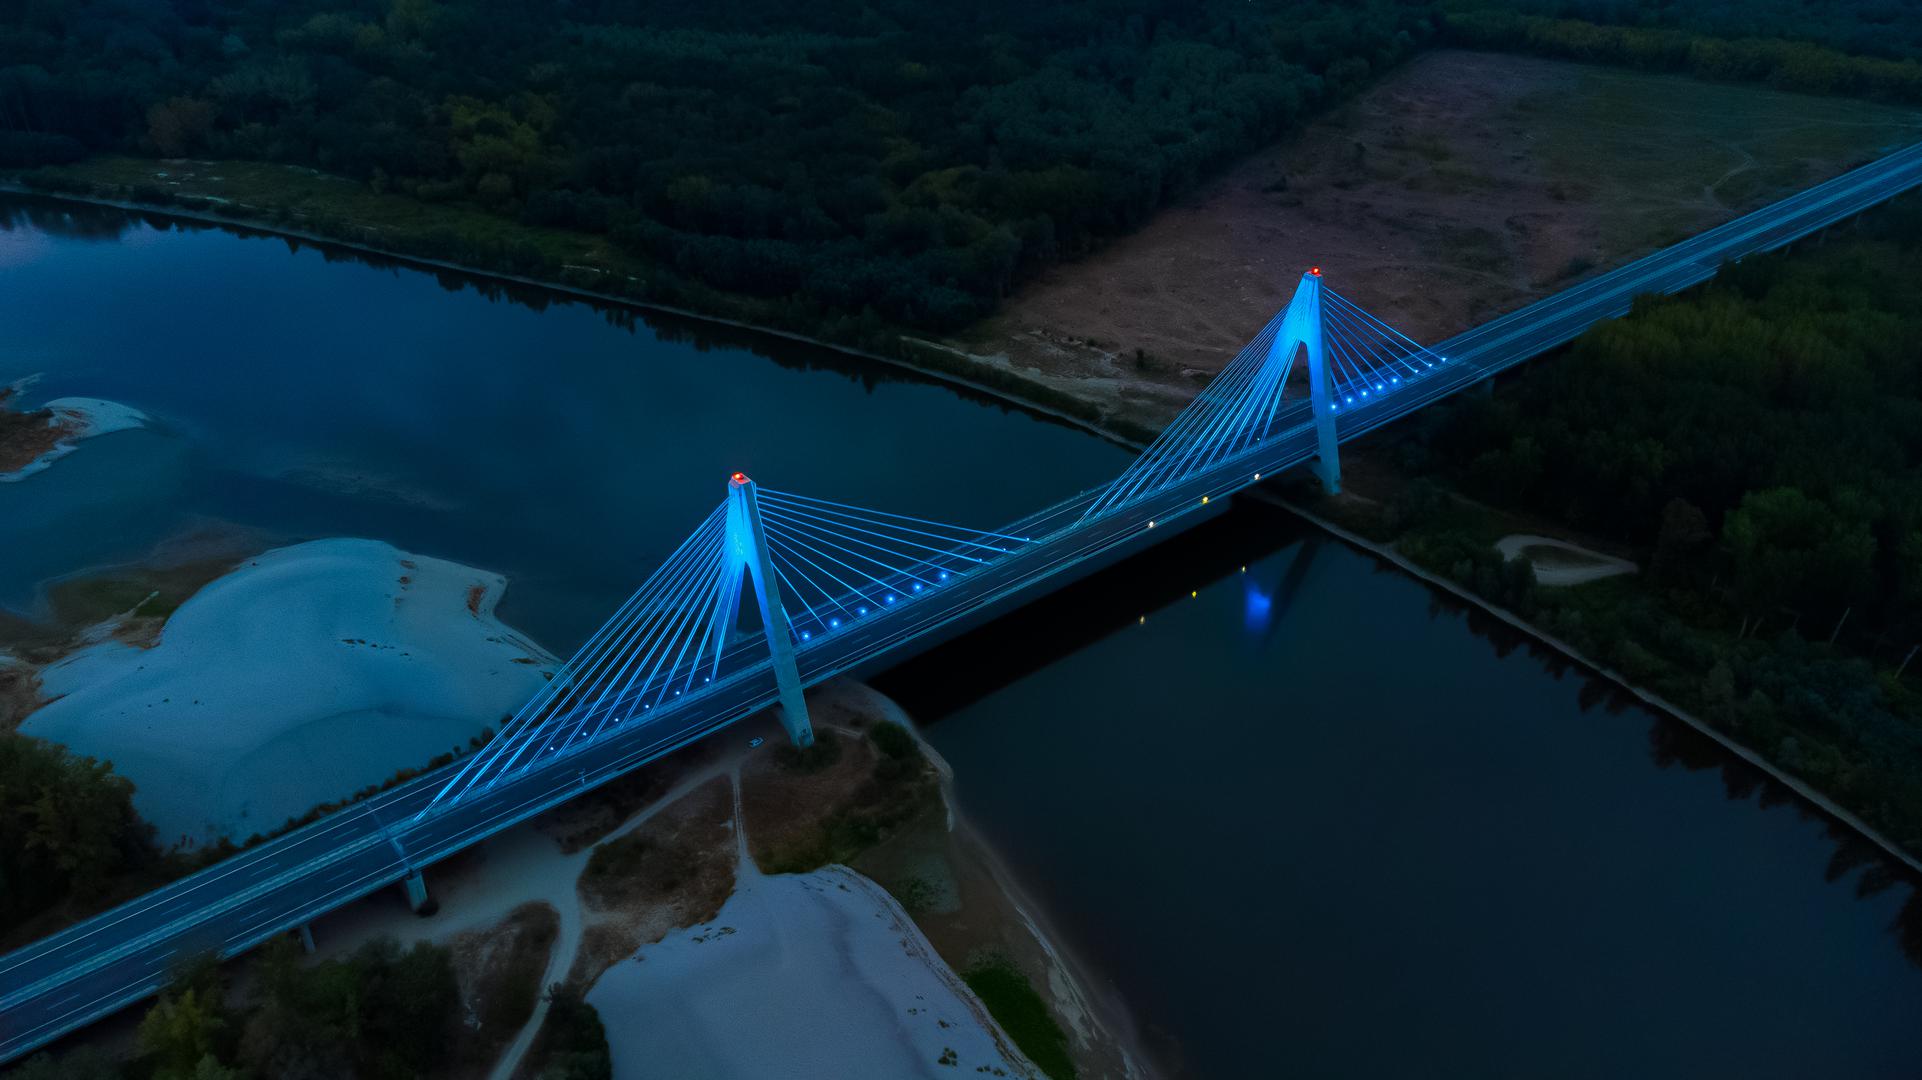 09.08.2022., Osijek, Petrijevci - Most preko rijeke Drave na koridoru 5c preko noci osvjetljen plavim svjetlom. Photo: Davor Javorovic/PIXSELL